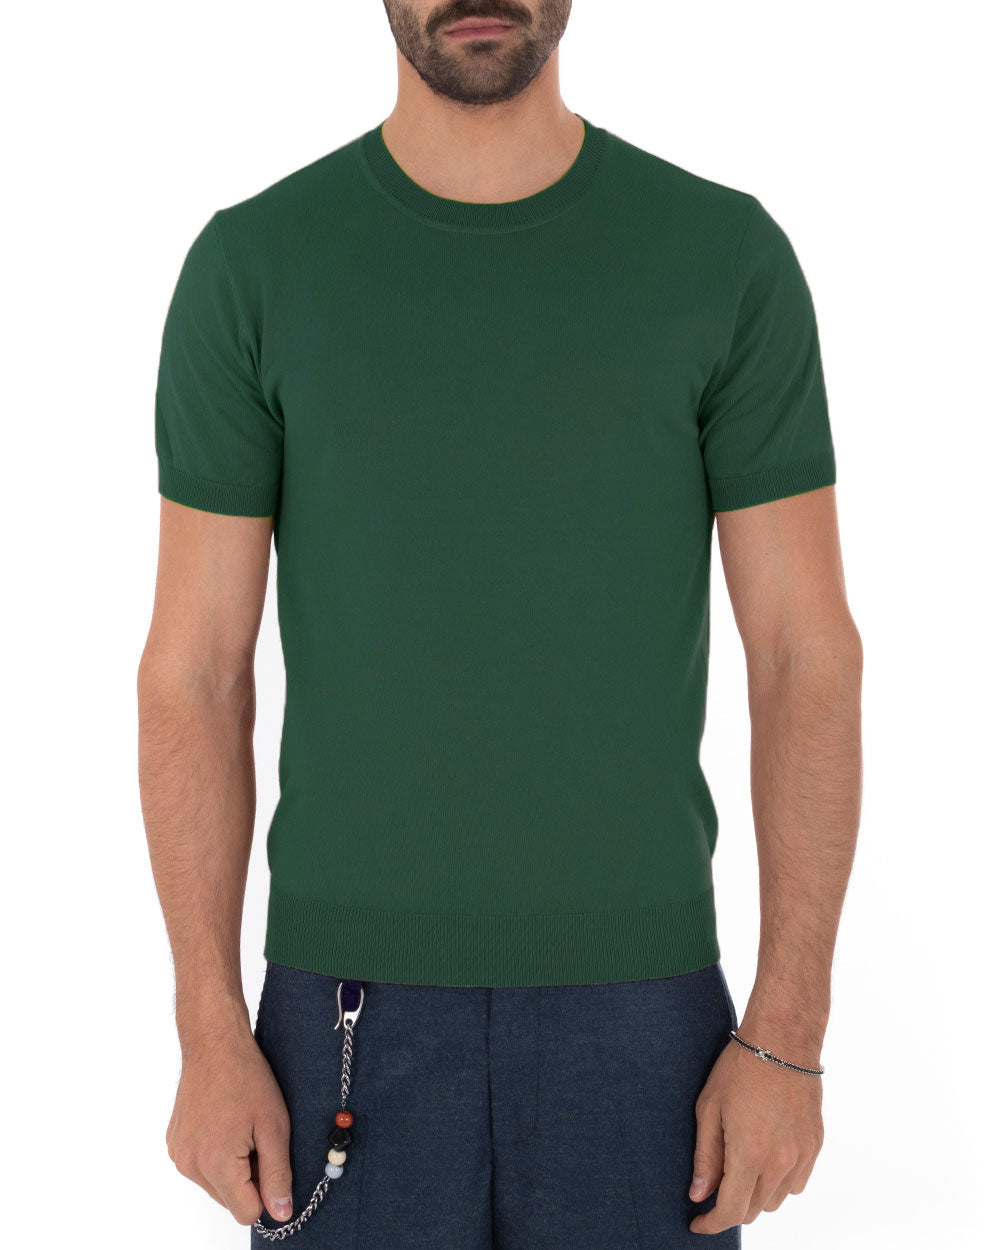 T-Shirt Uomo Maniche Corte Tinta Unita Verde Bottiglia Girocollo Filo Casual GIOSAL-TS3051A